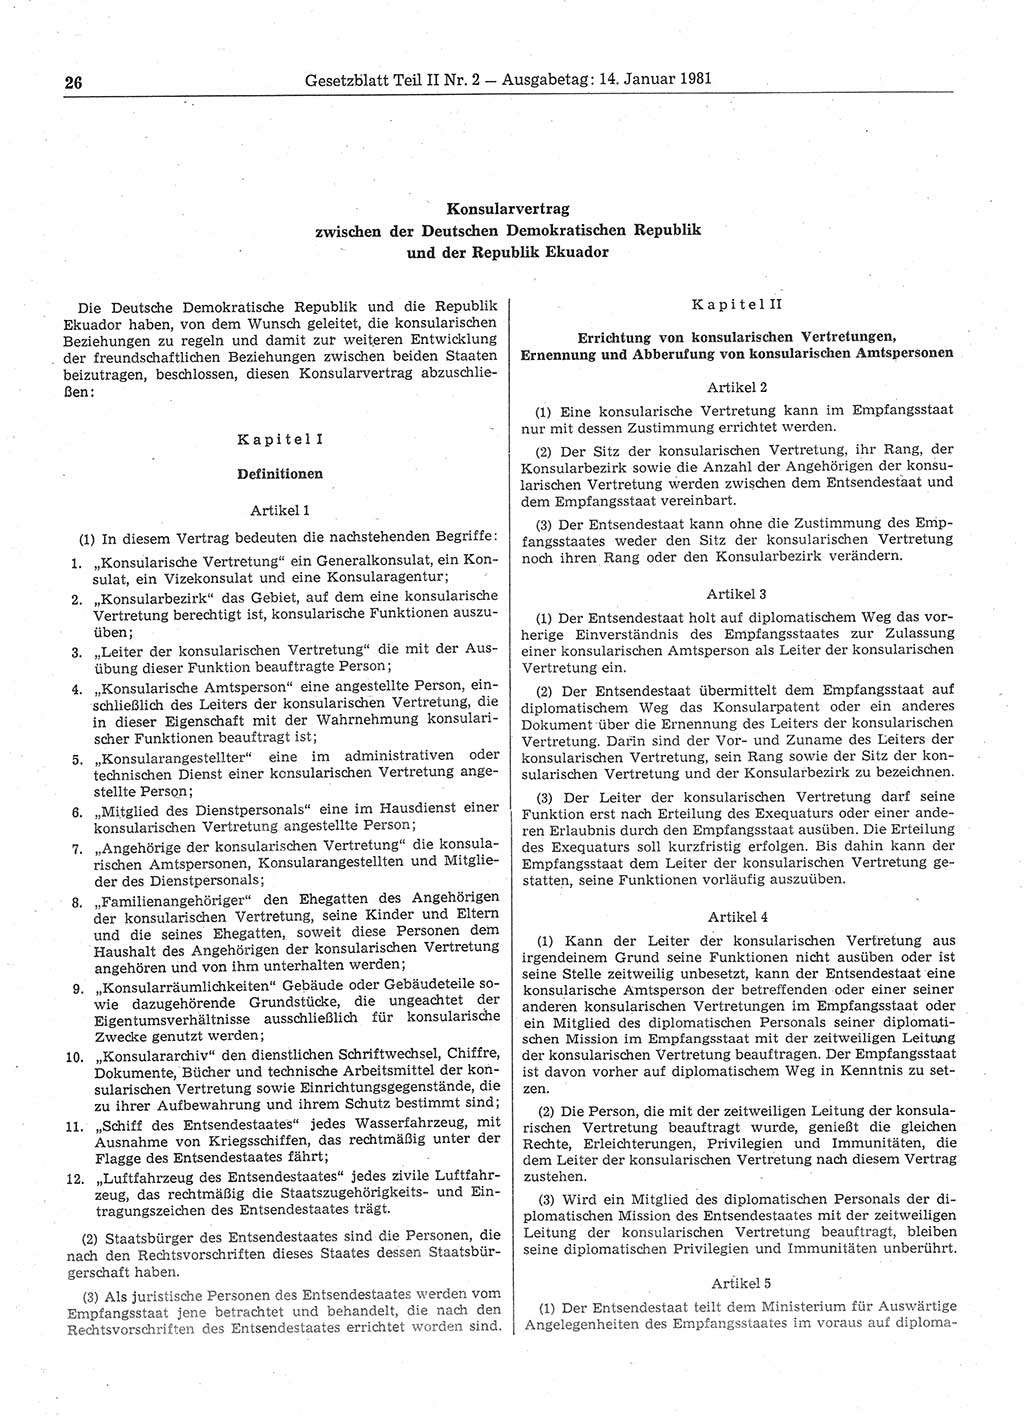 Gesetzblatt (GBl.) der Deutschen Demokratischen Republik (DDR) Teil ⅠⅠ 1981, Seite 26 (GBl. DDR ⅠⅠ 1981, S. 26)